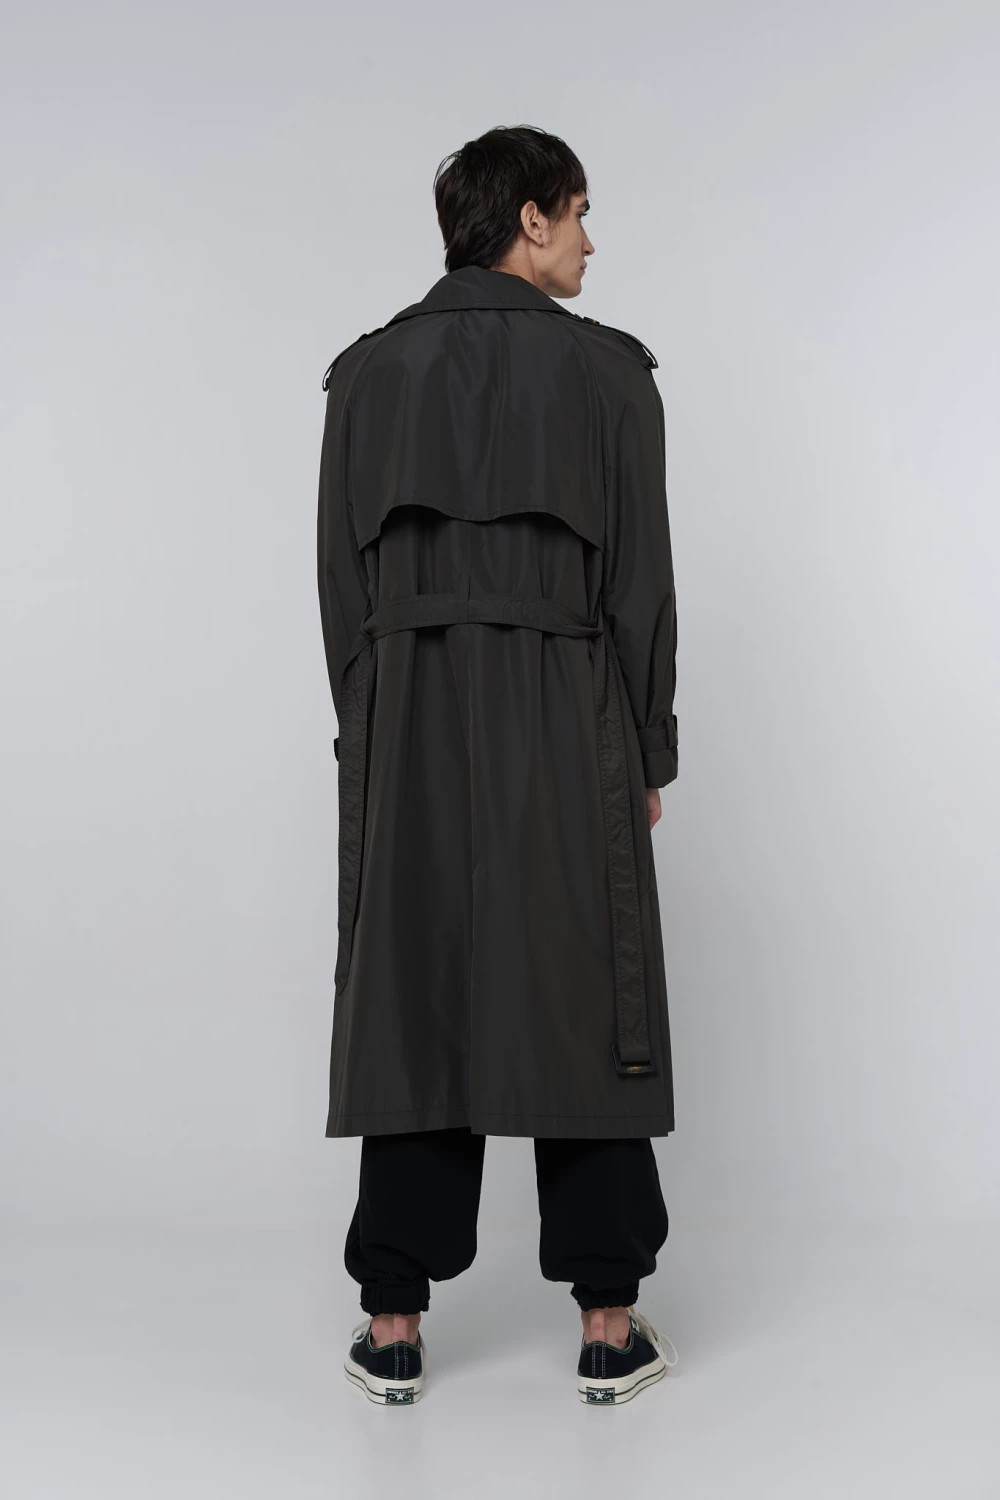 80s trench coat in dark grey color